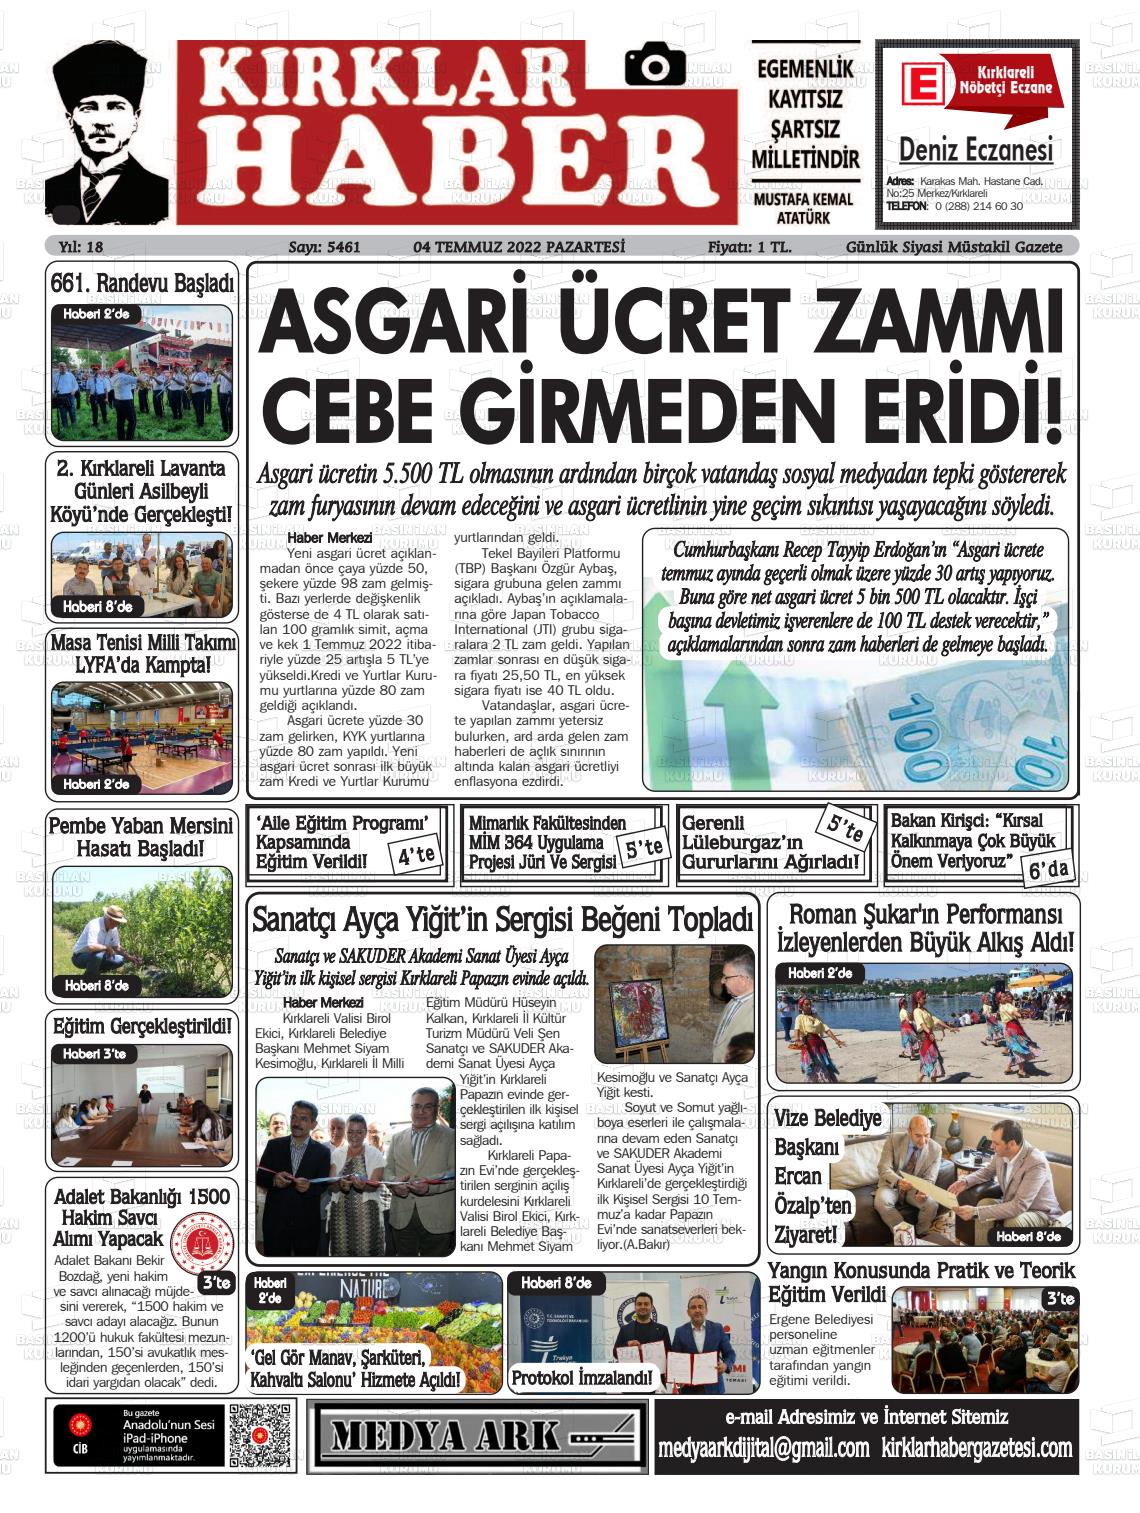 04 Temmuz 2022 Kırklar Haber Gazete Manşeti